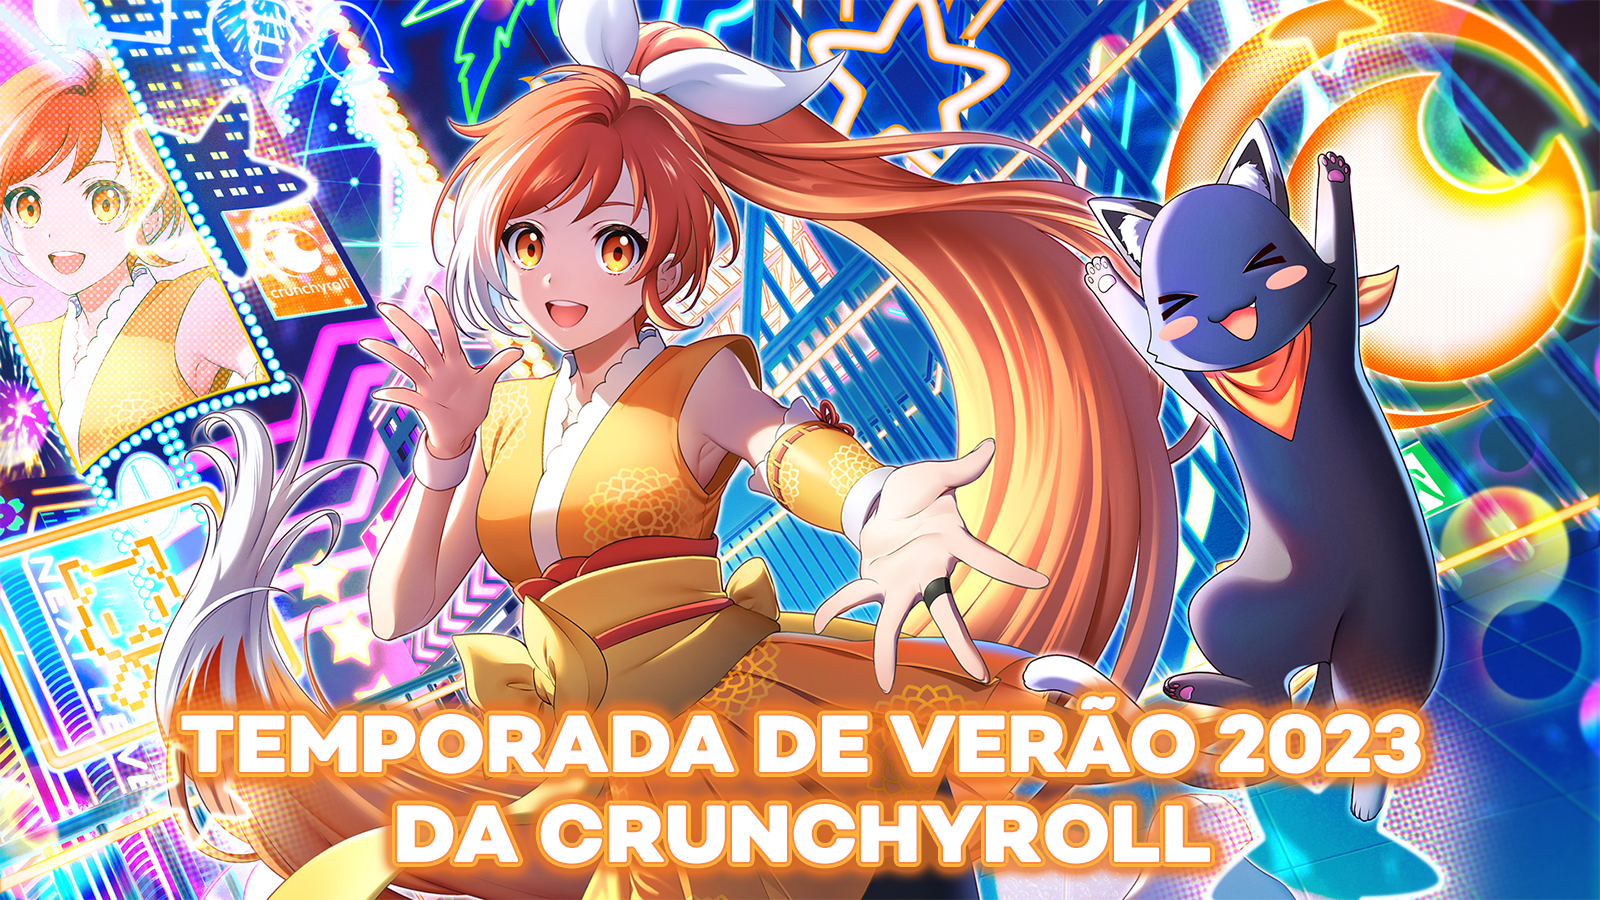 Crunchyroll anuncia Temporada de Verão 2023